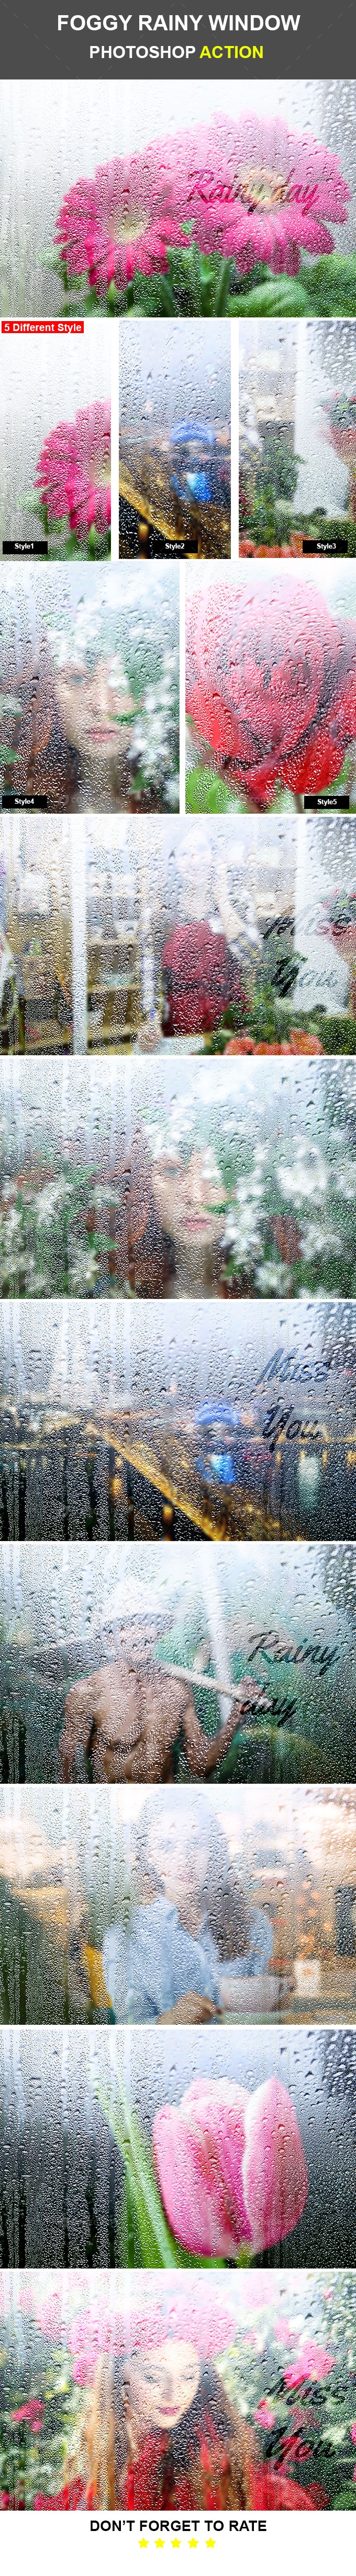 Foggy Rainy Window Photoshop Action